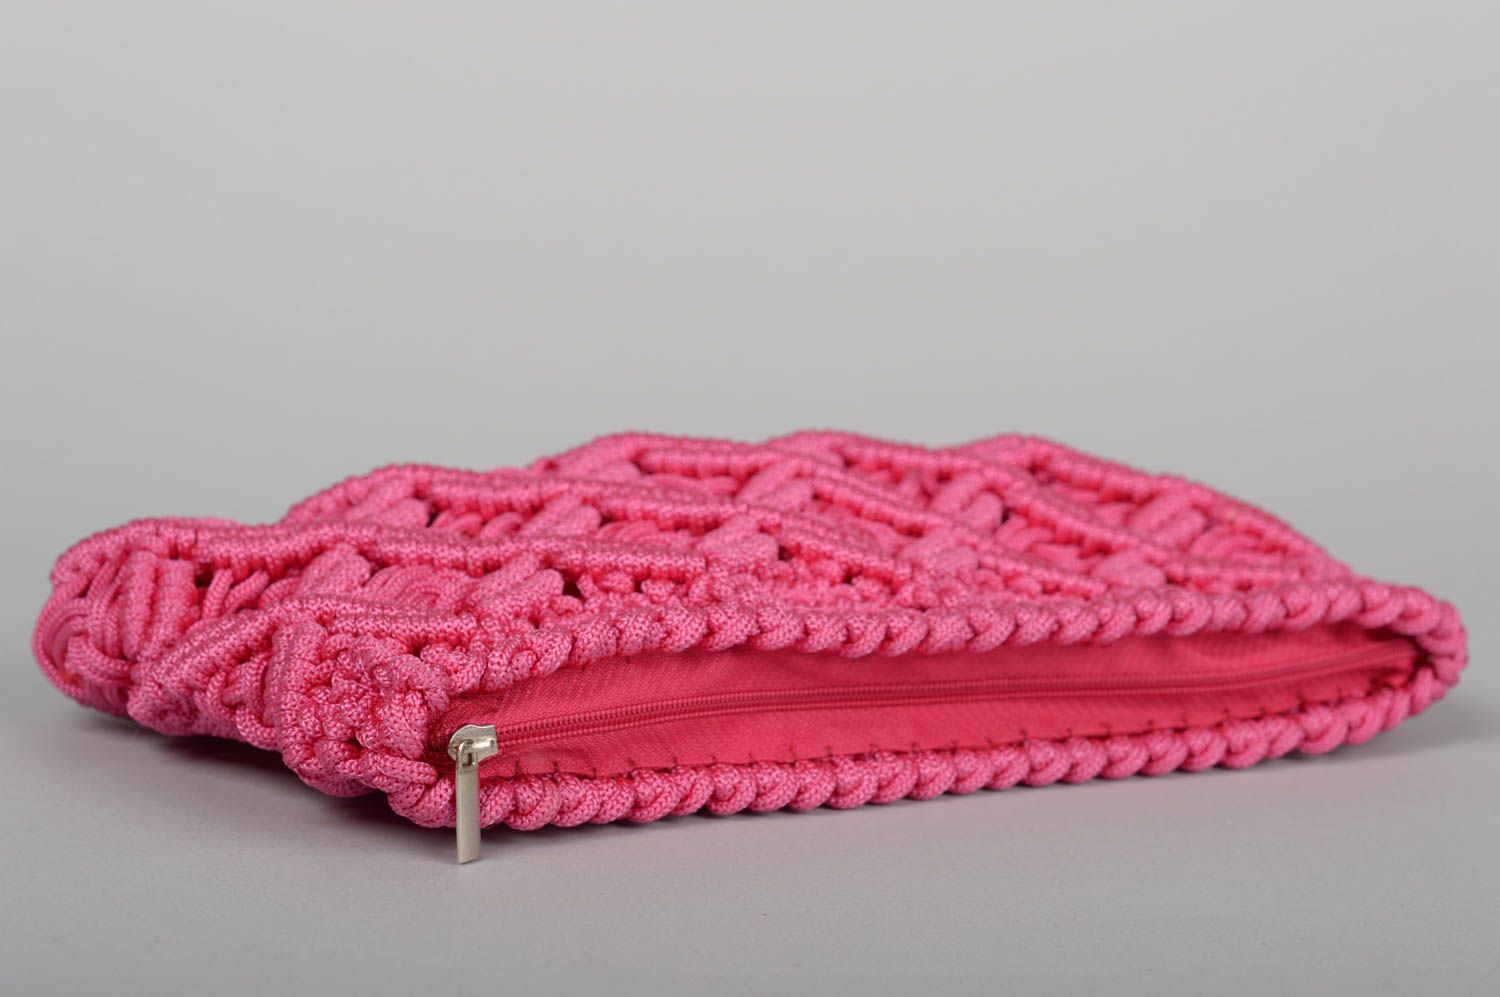 Сумка ручной работы сумочка клатч женская сумка розовая в технике макраме фото 4